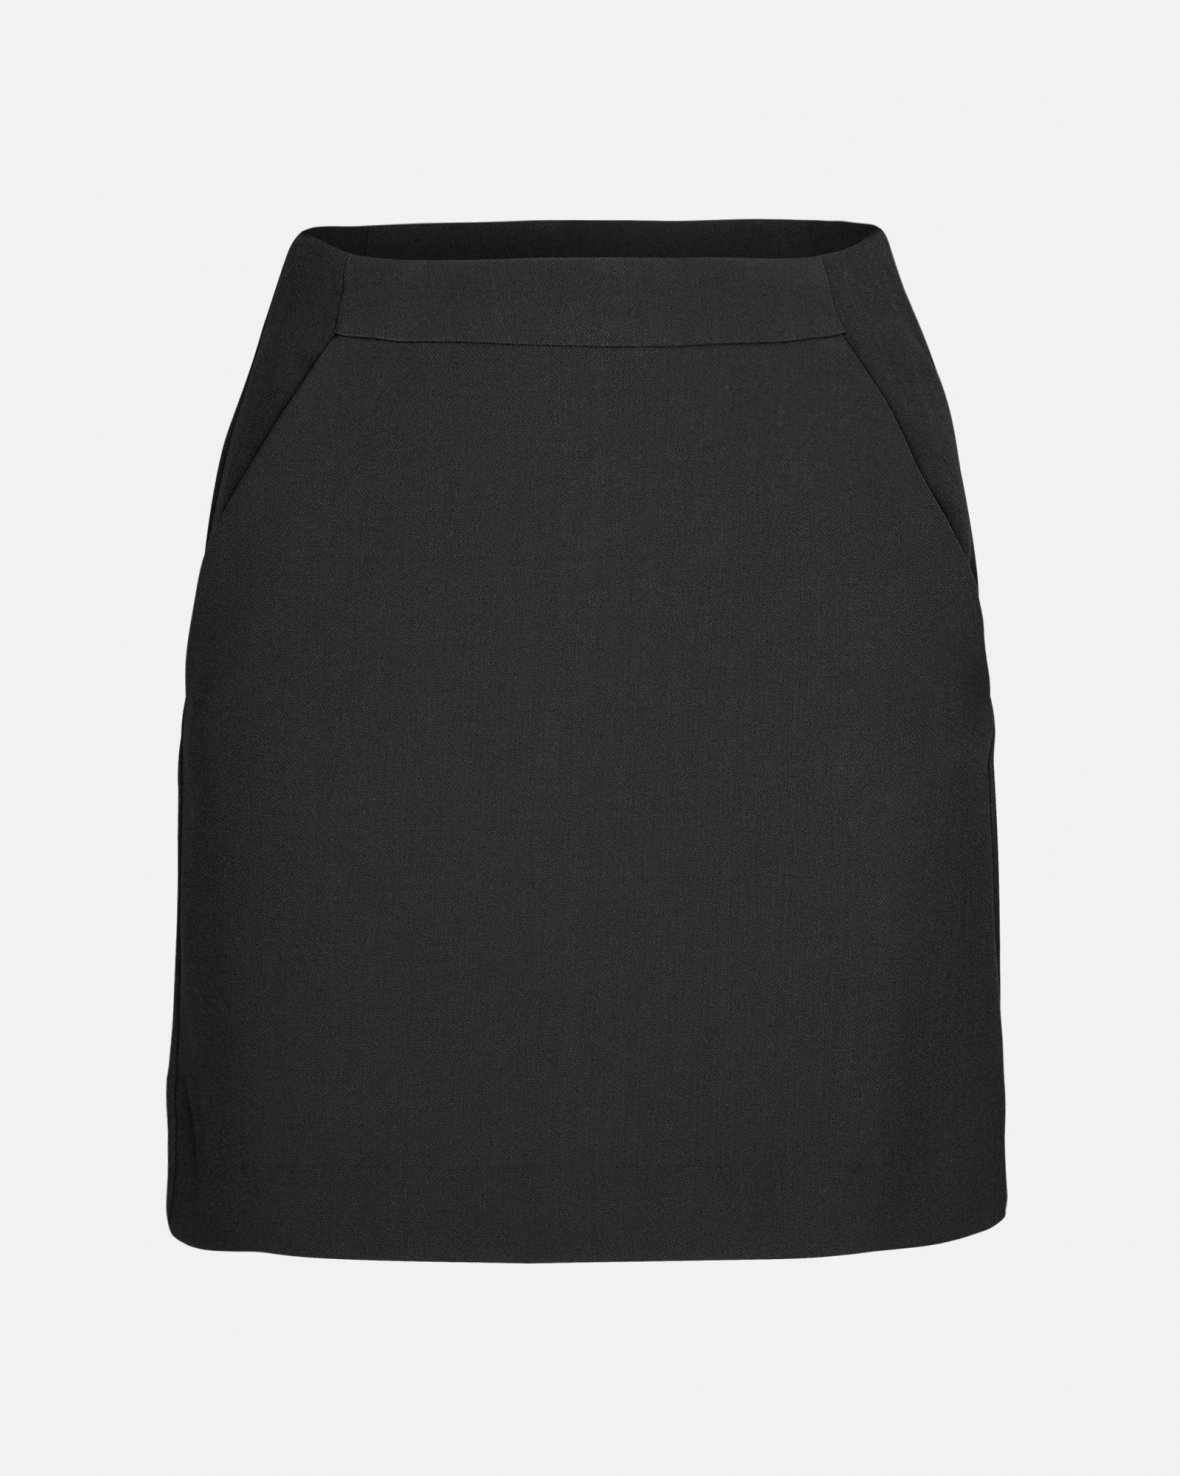 MSCH Copenhagen - MSCHThalea Kirby HW Skirt - Black